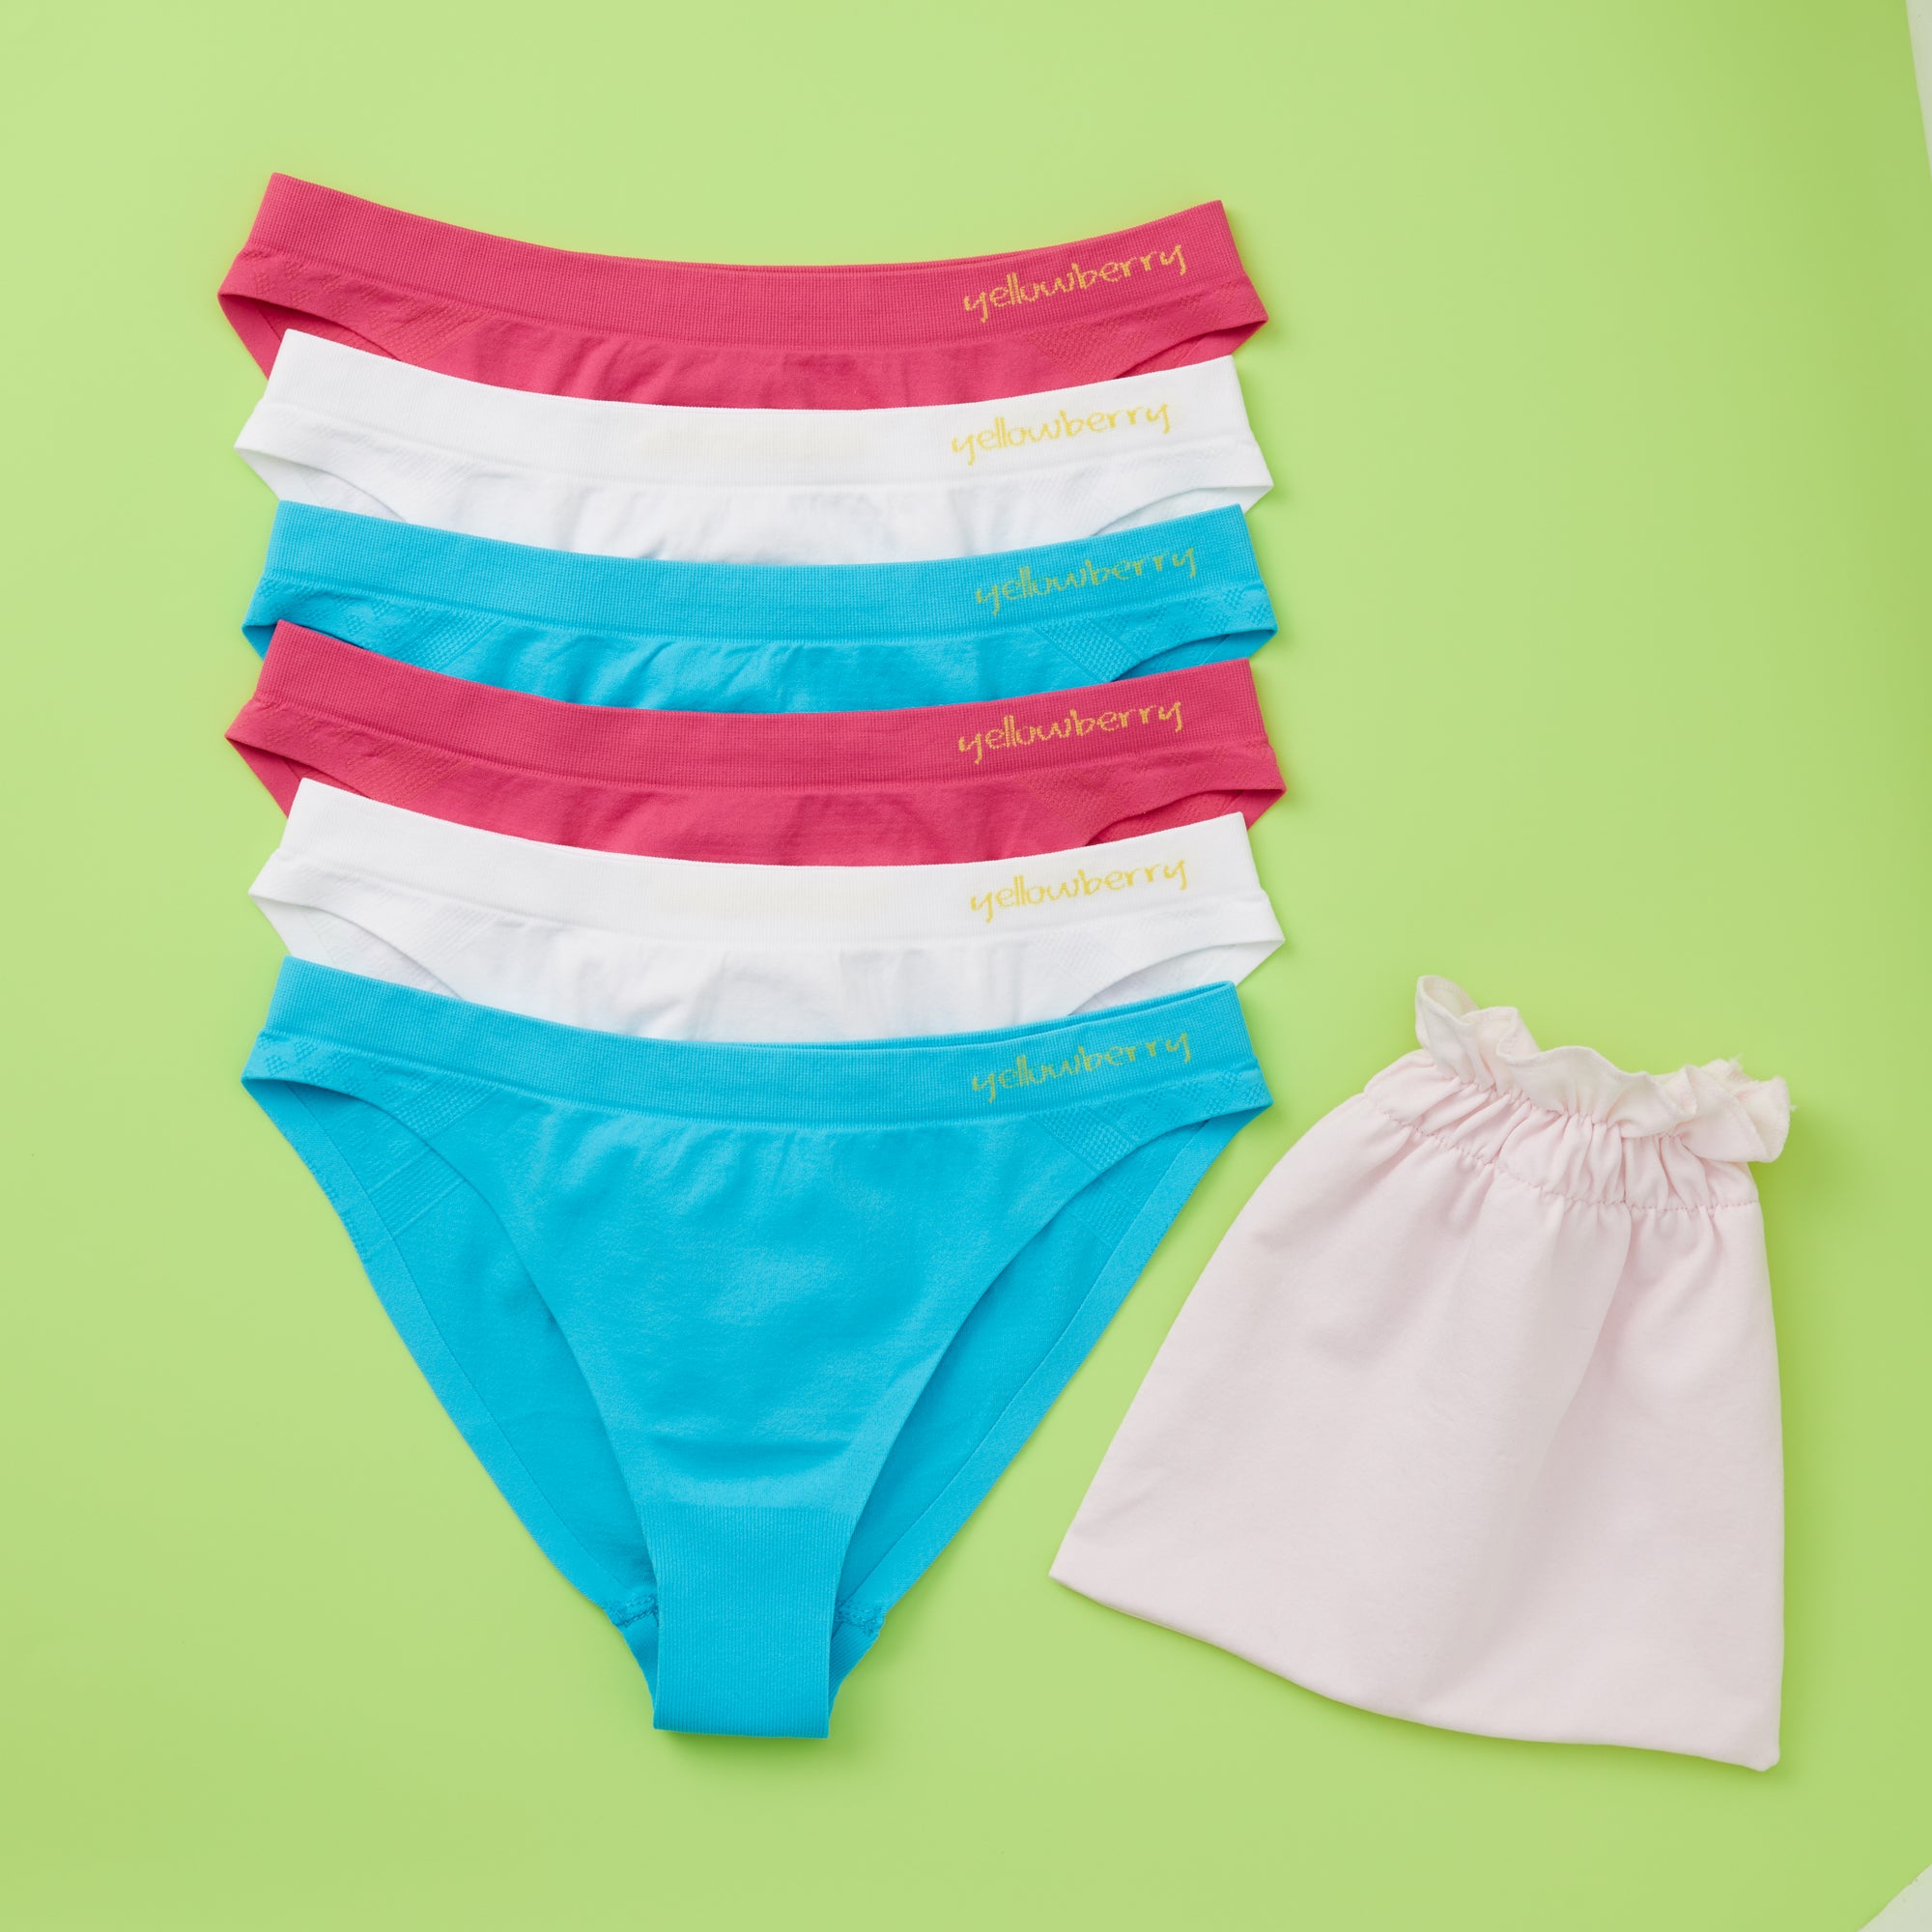 How to Make Underwear Seamless